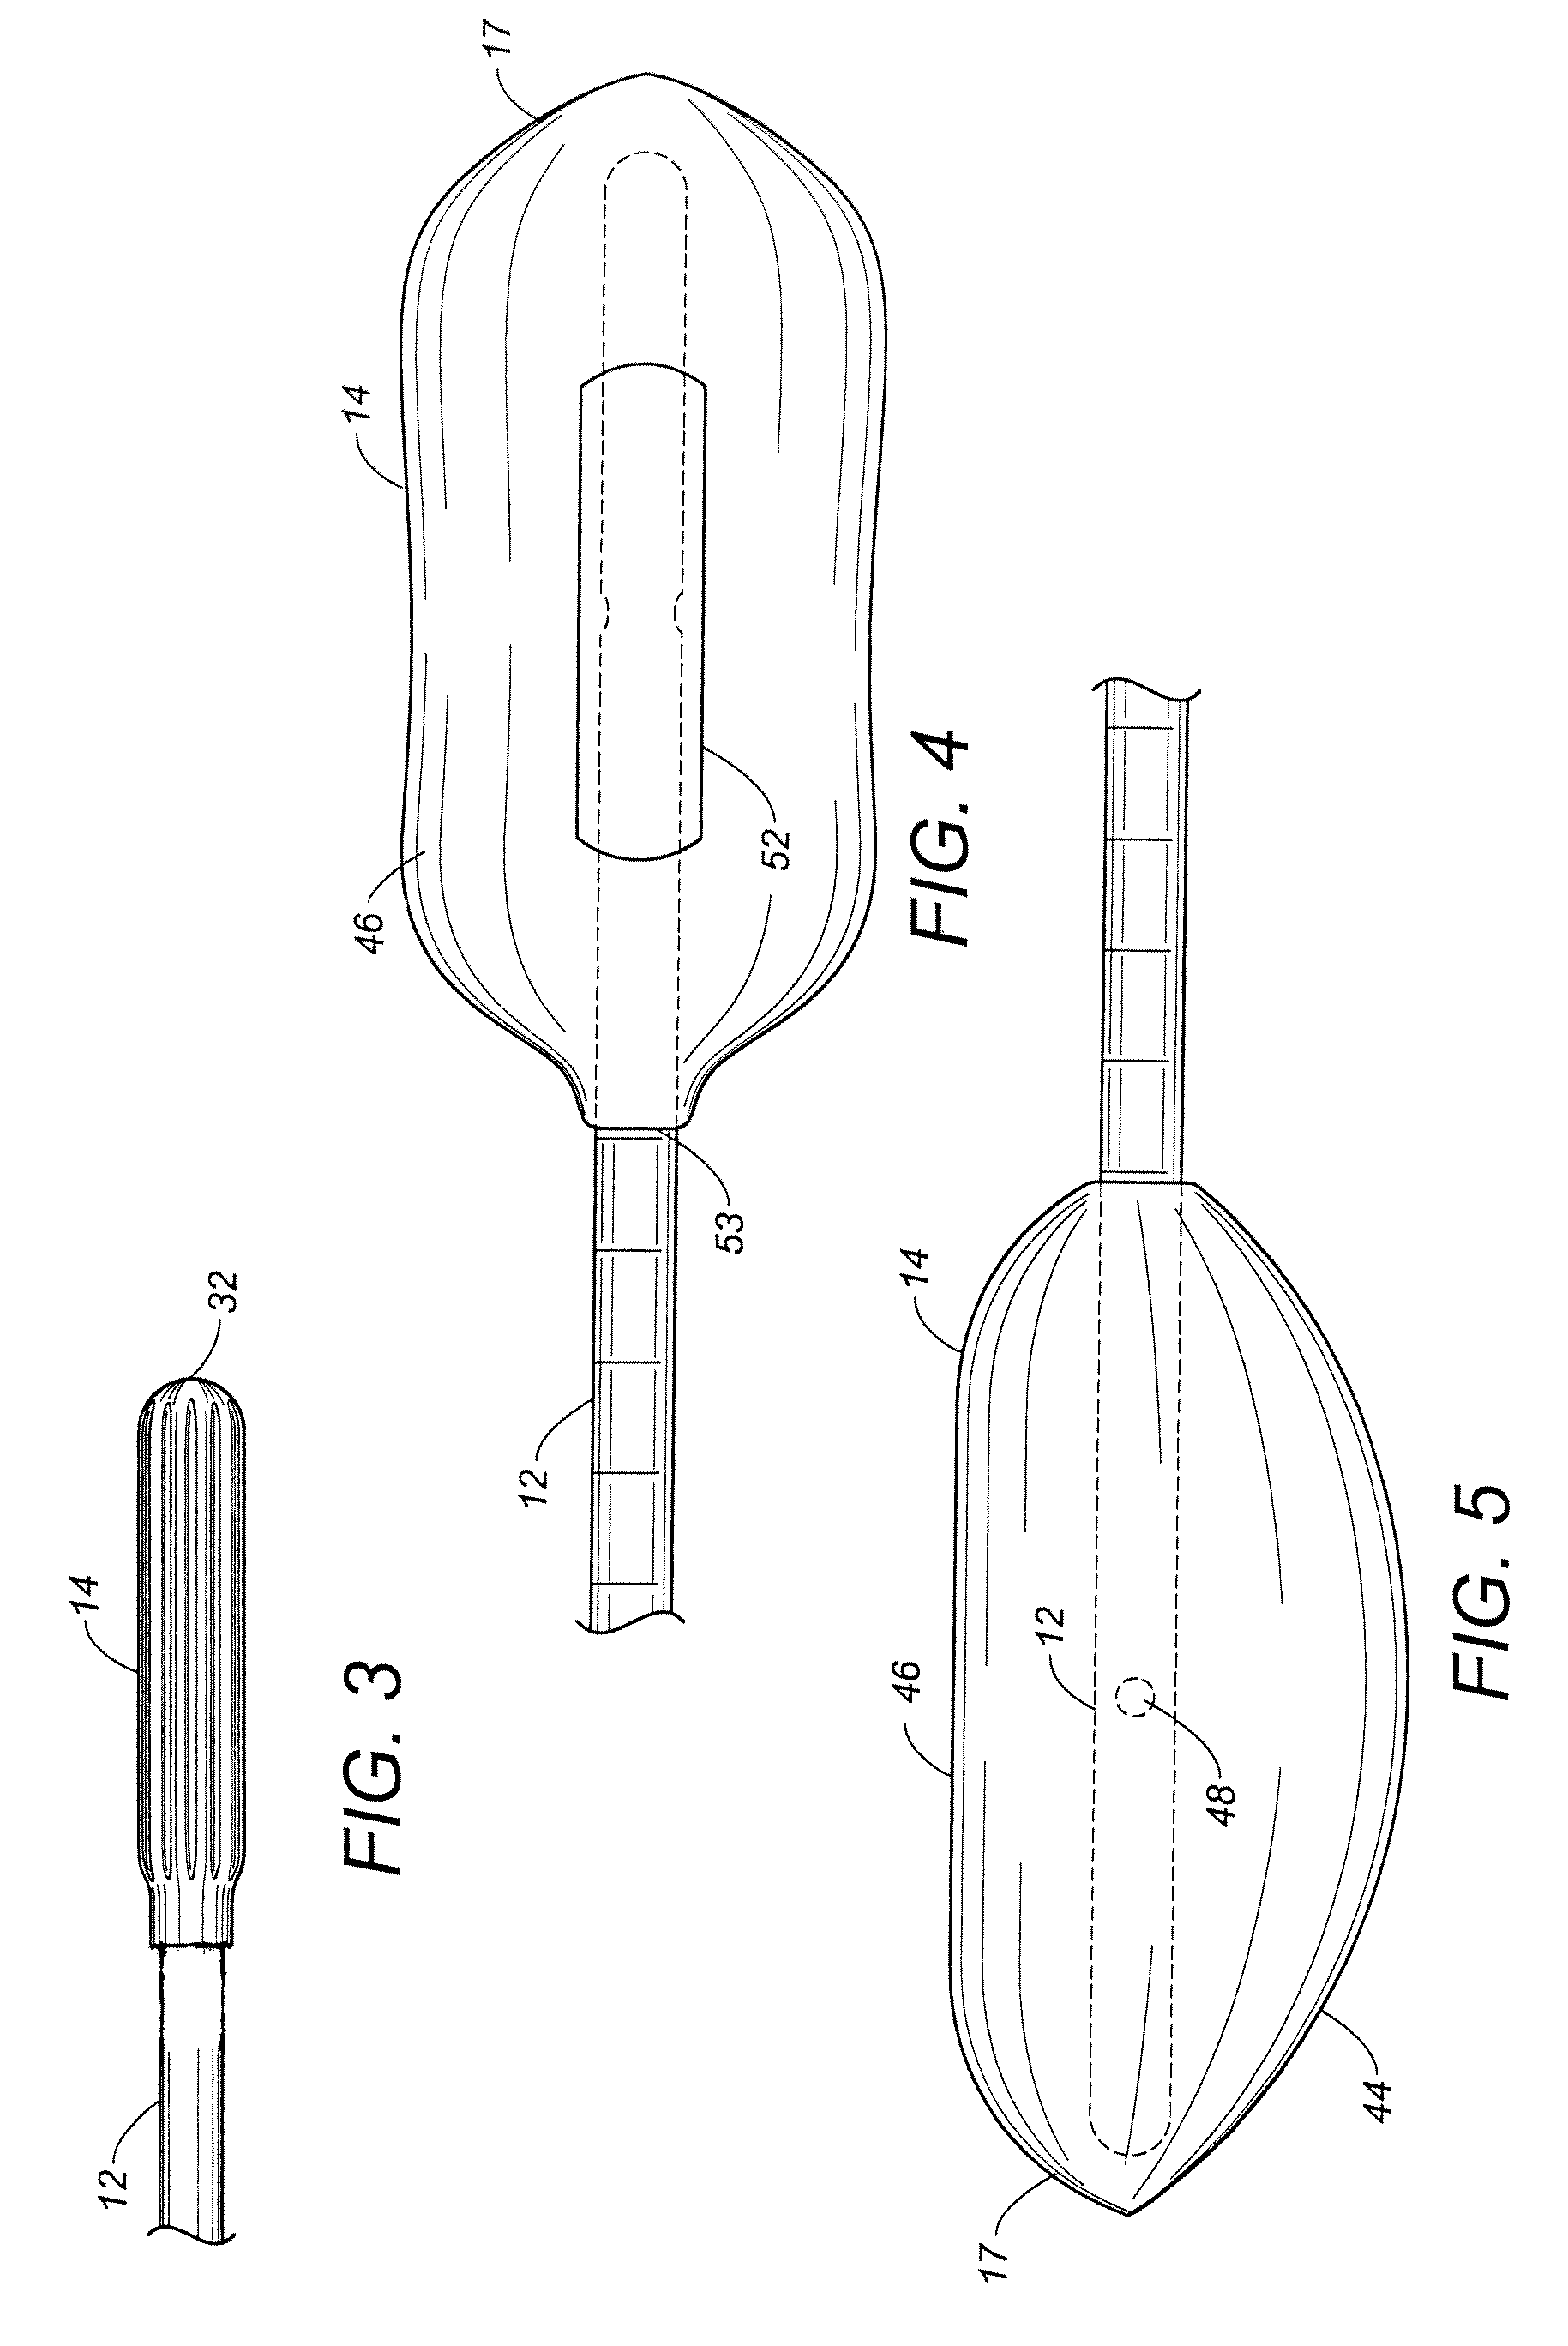 Minimally invasive rectal balloon apparatus